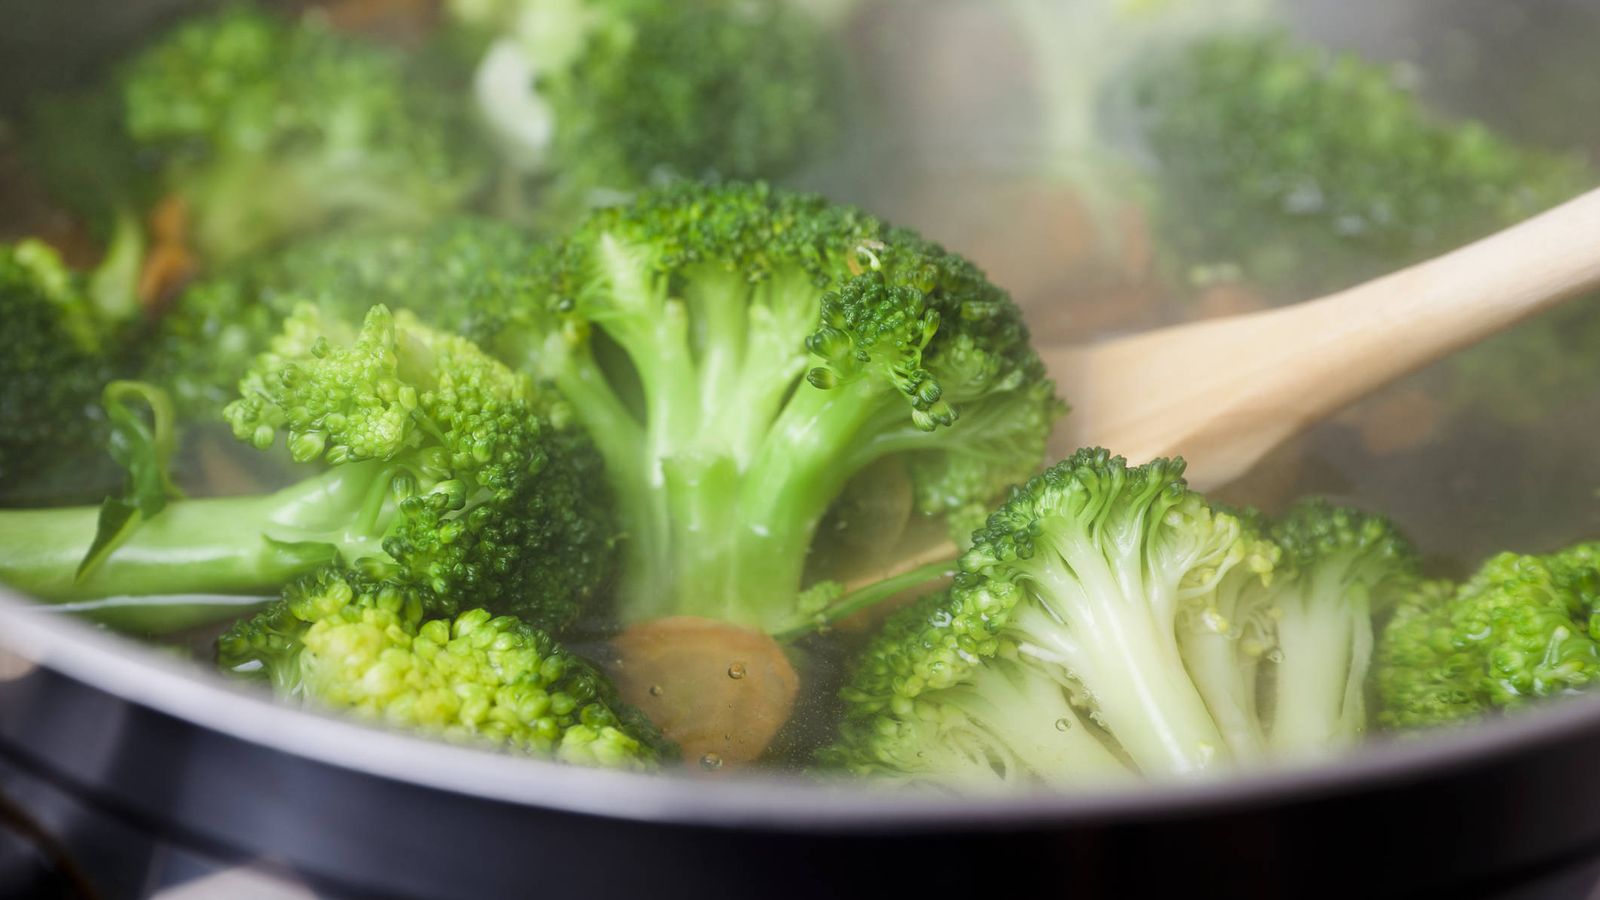 Foto: Este brócoli podría crujir o deshacerse suavemente en nuestra boca. ¿Cuál de las dos opciones es mejor? (iStock)